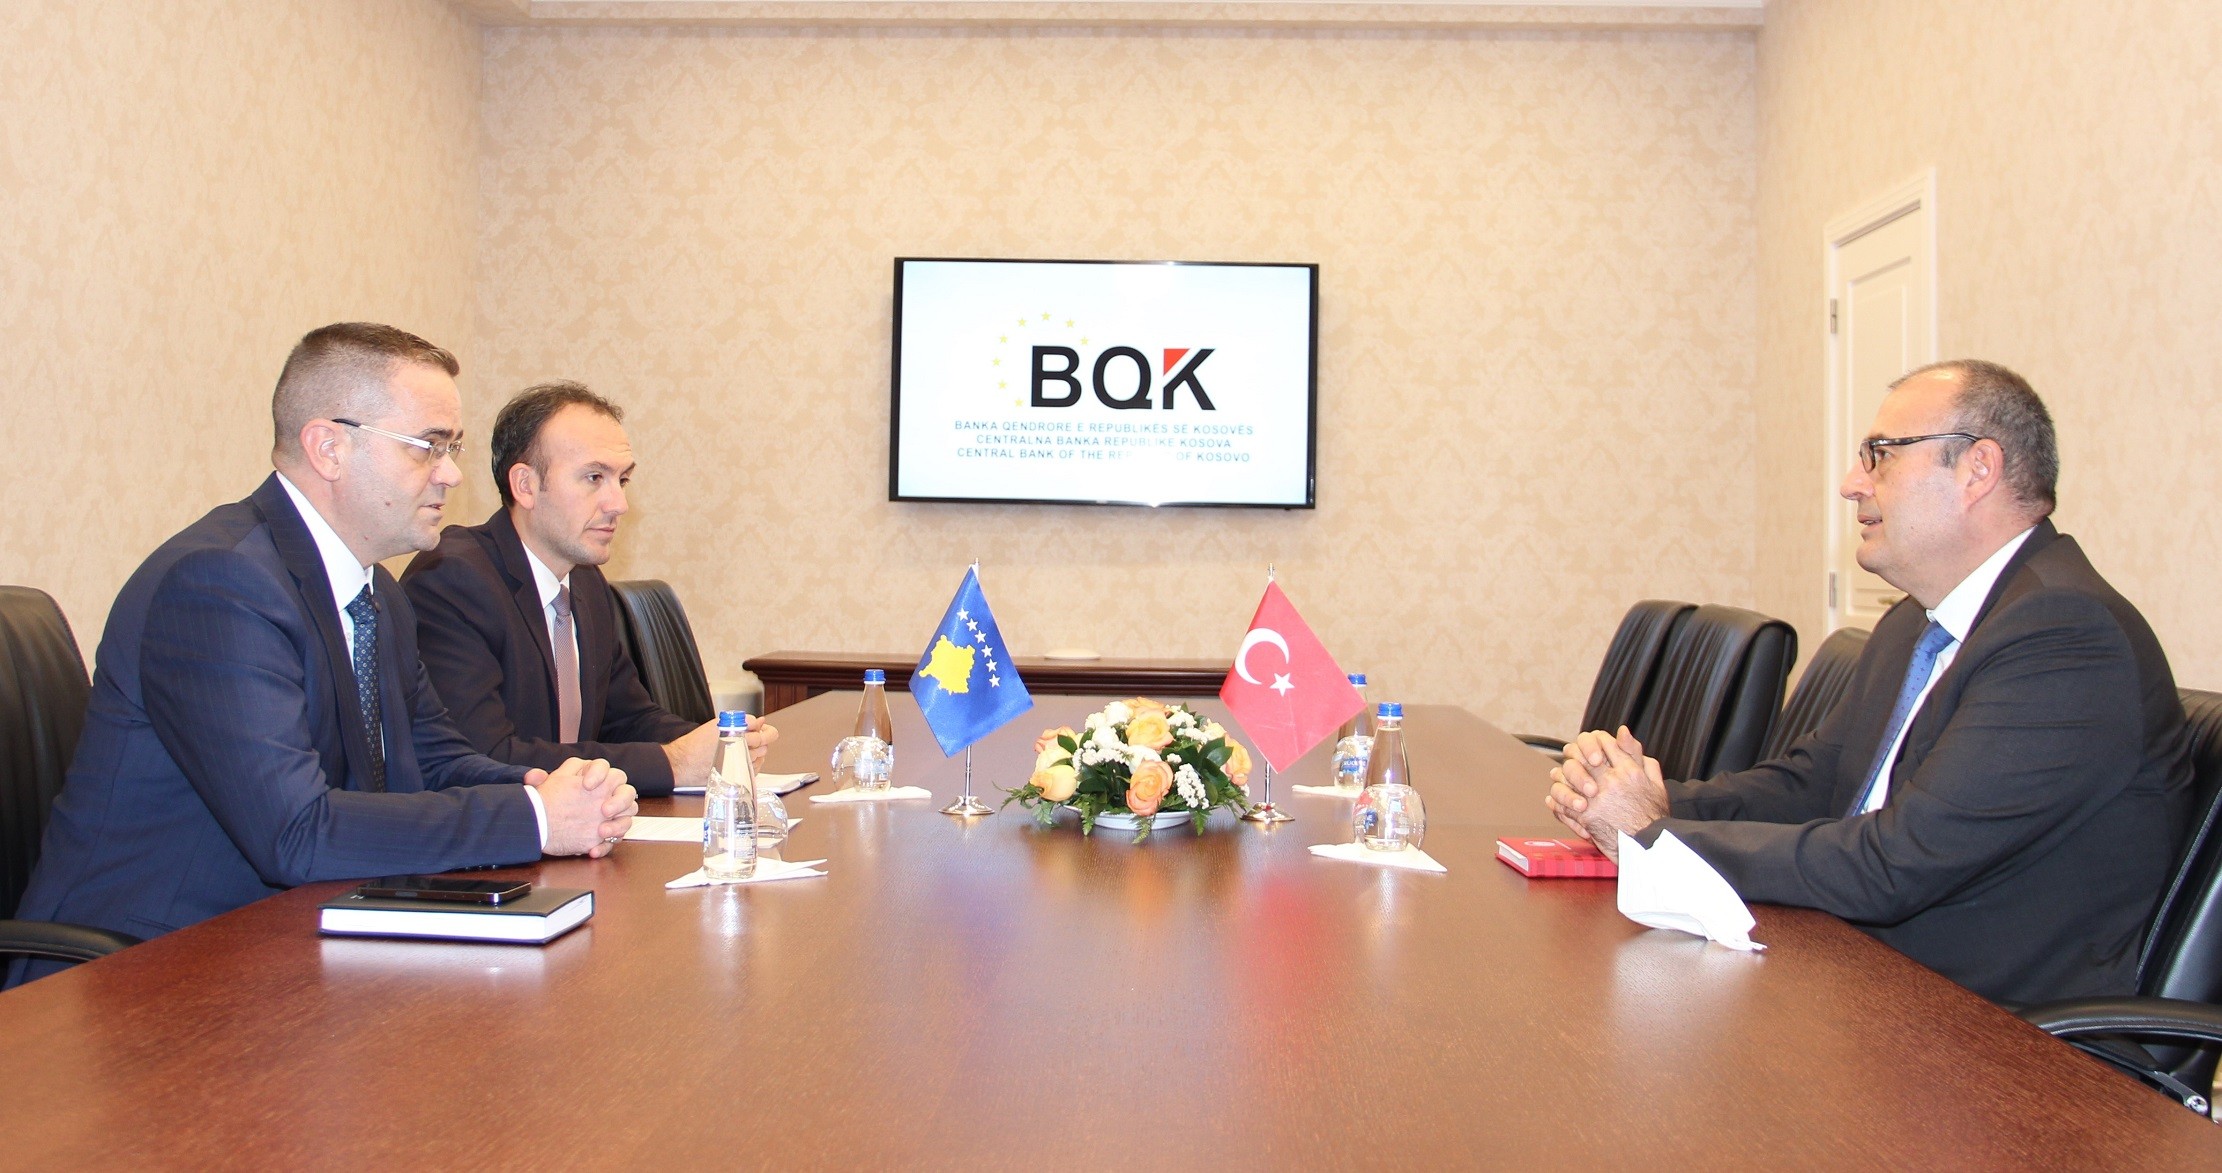 Guvernatori Mehmeti dhe ambasadori Sakar flasin për zhvillimet në ekonomi